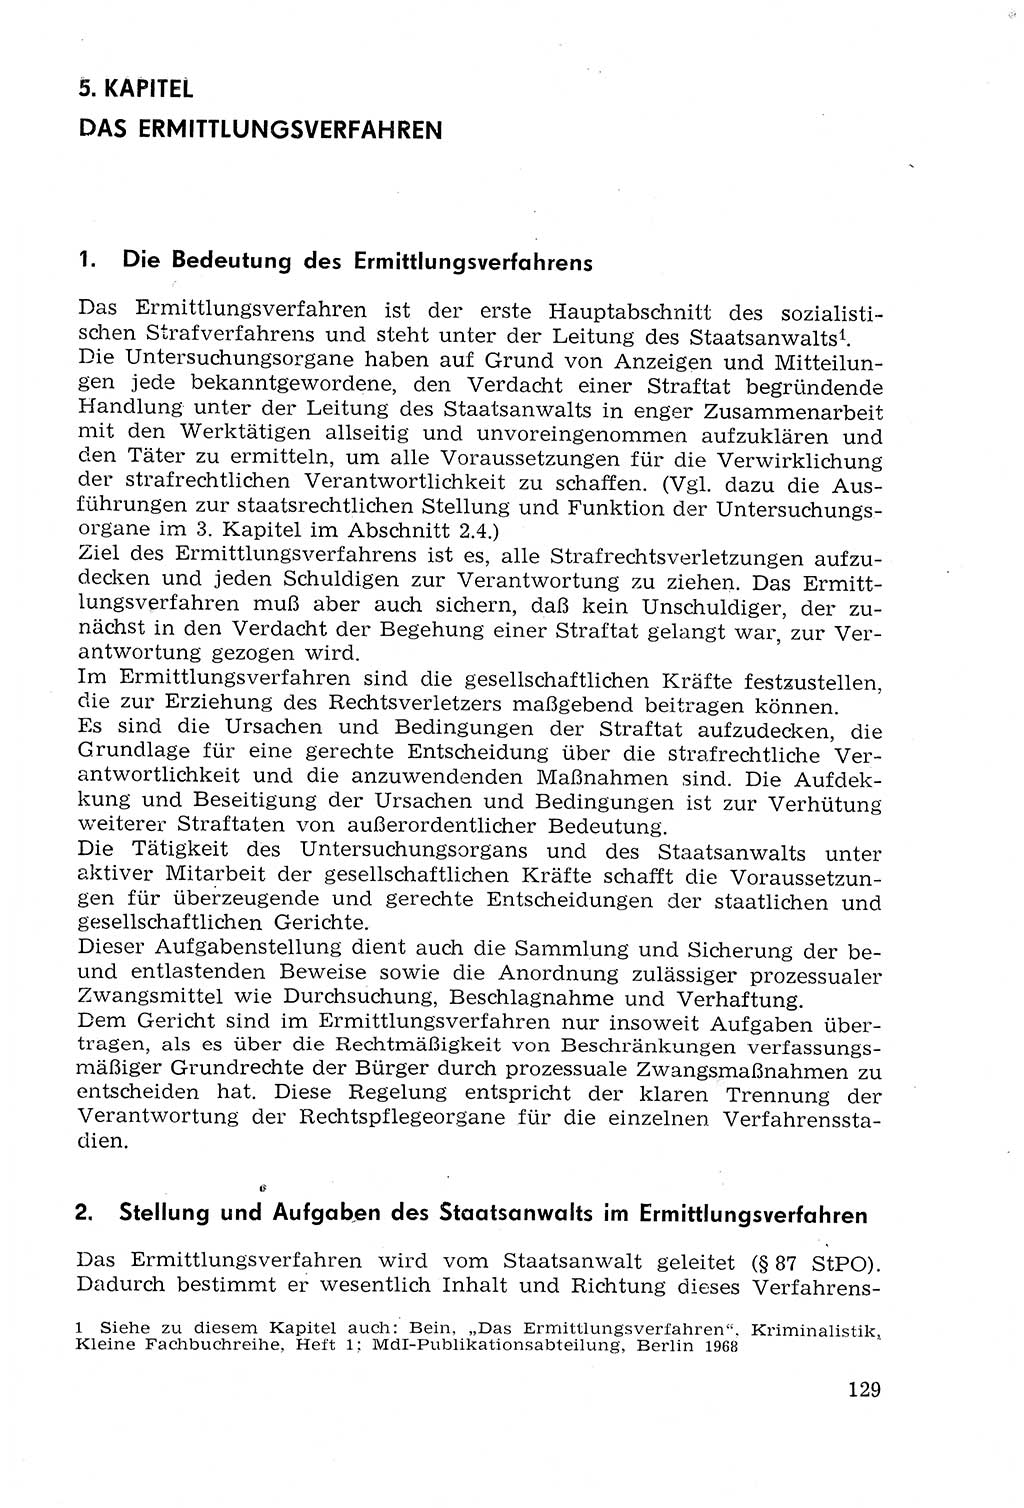 Strafprozeßrecht der DDR (Deutsche Demokratische Republik), Lehrmaterial 1969, Seite 129 (Strafprozeßr. DDR Lehrmat. 1969, S. 129)